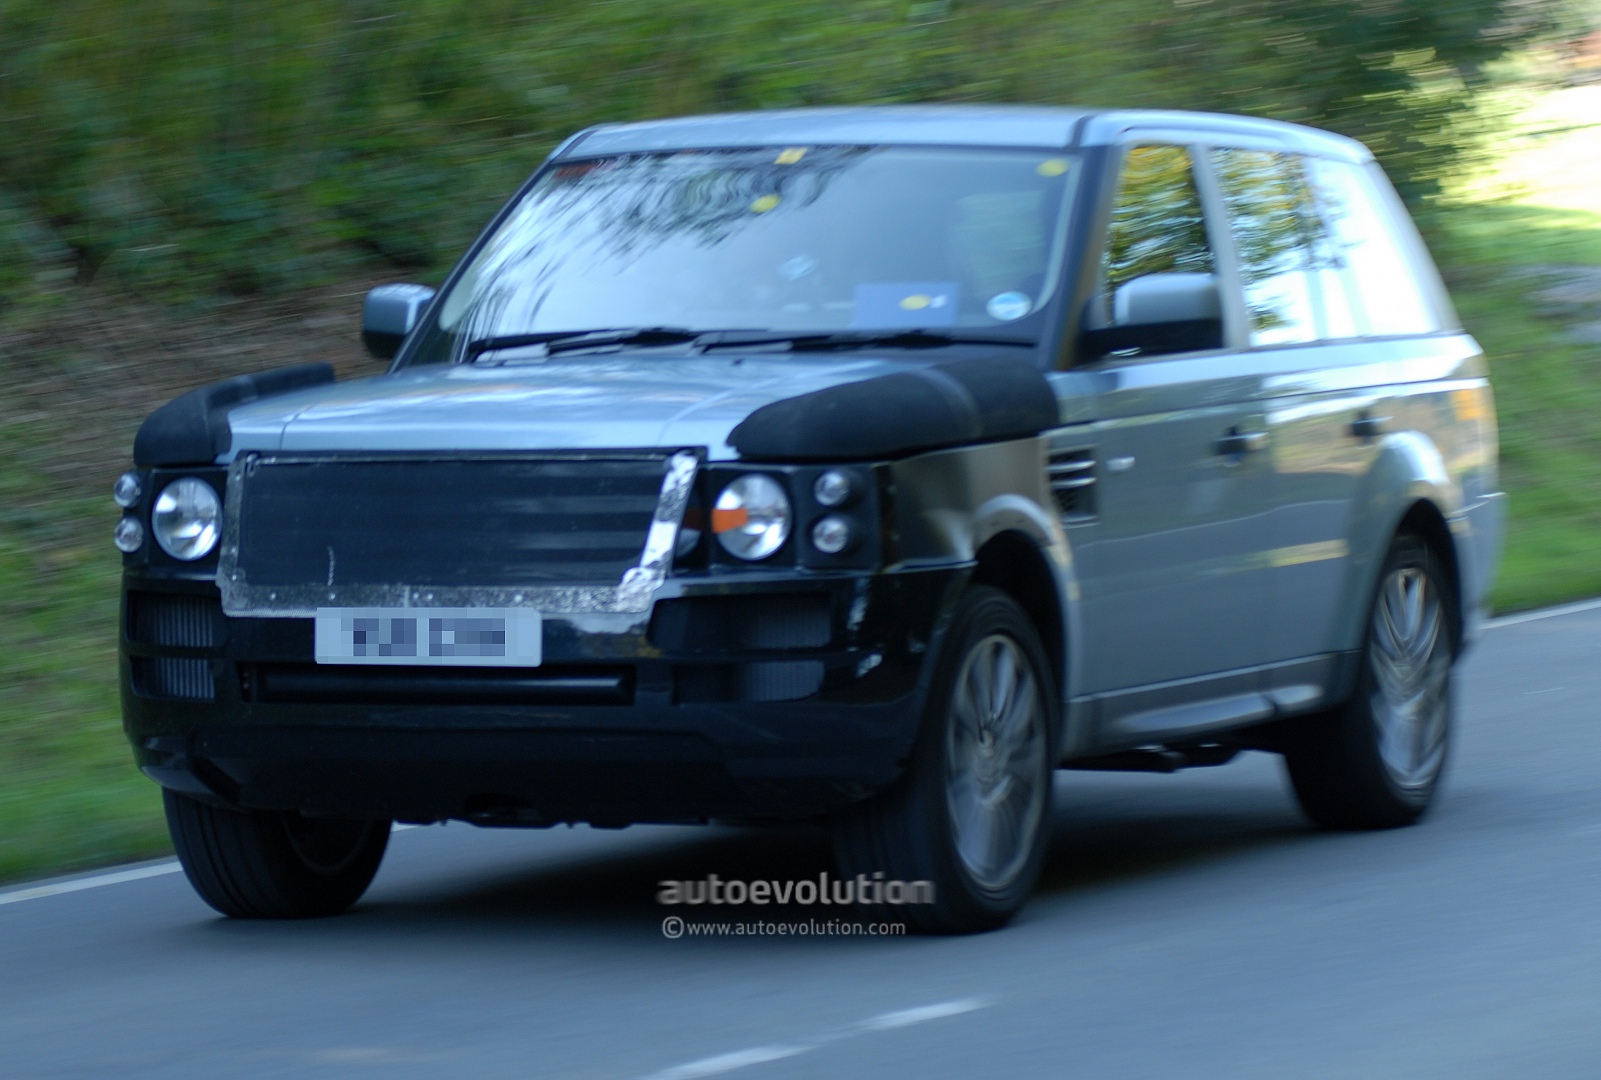 2014 Range Rover Sport spied